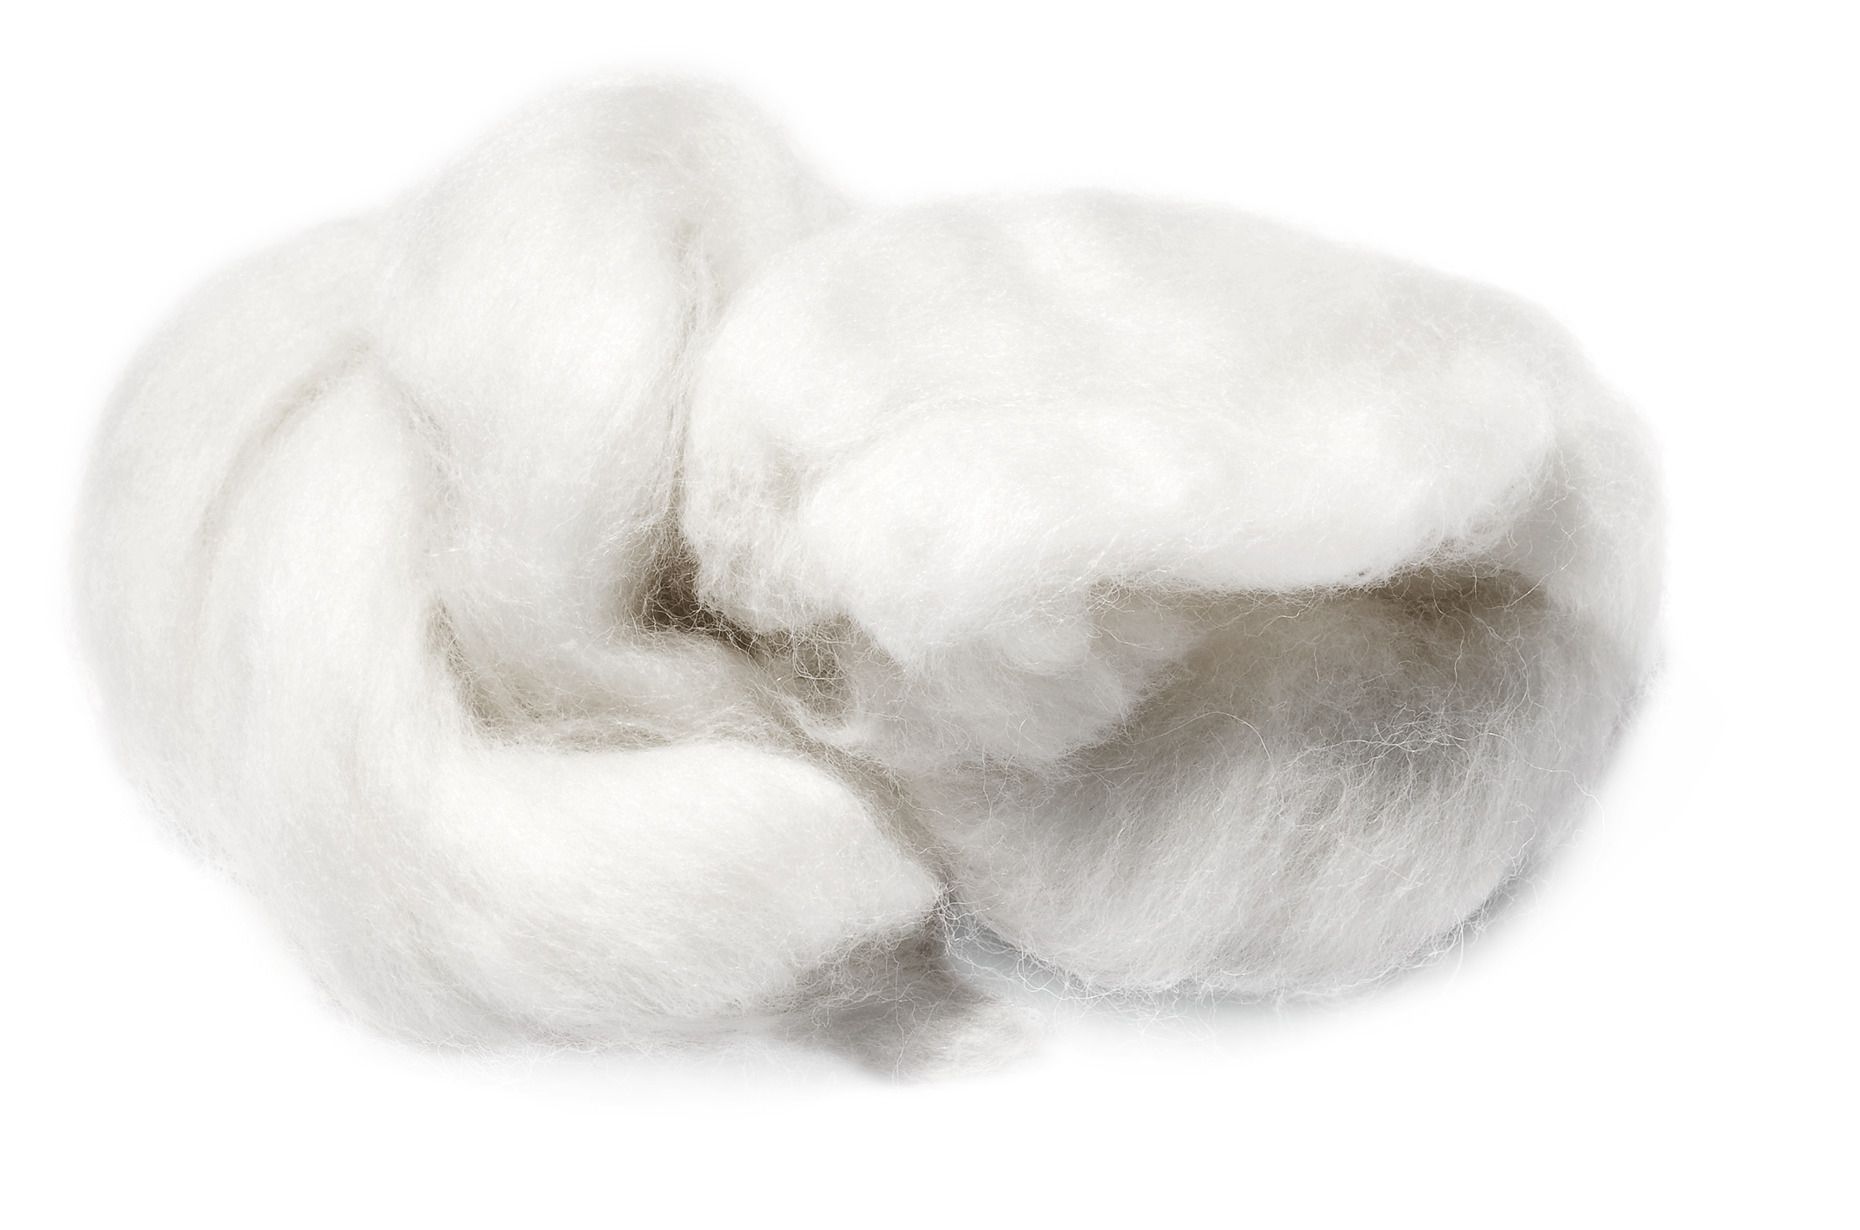 SANTA FLEX  Orig. Australische Lammwolle 20 g